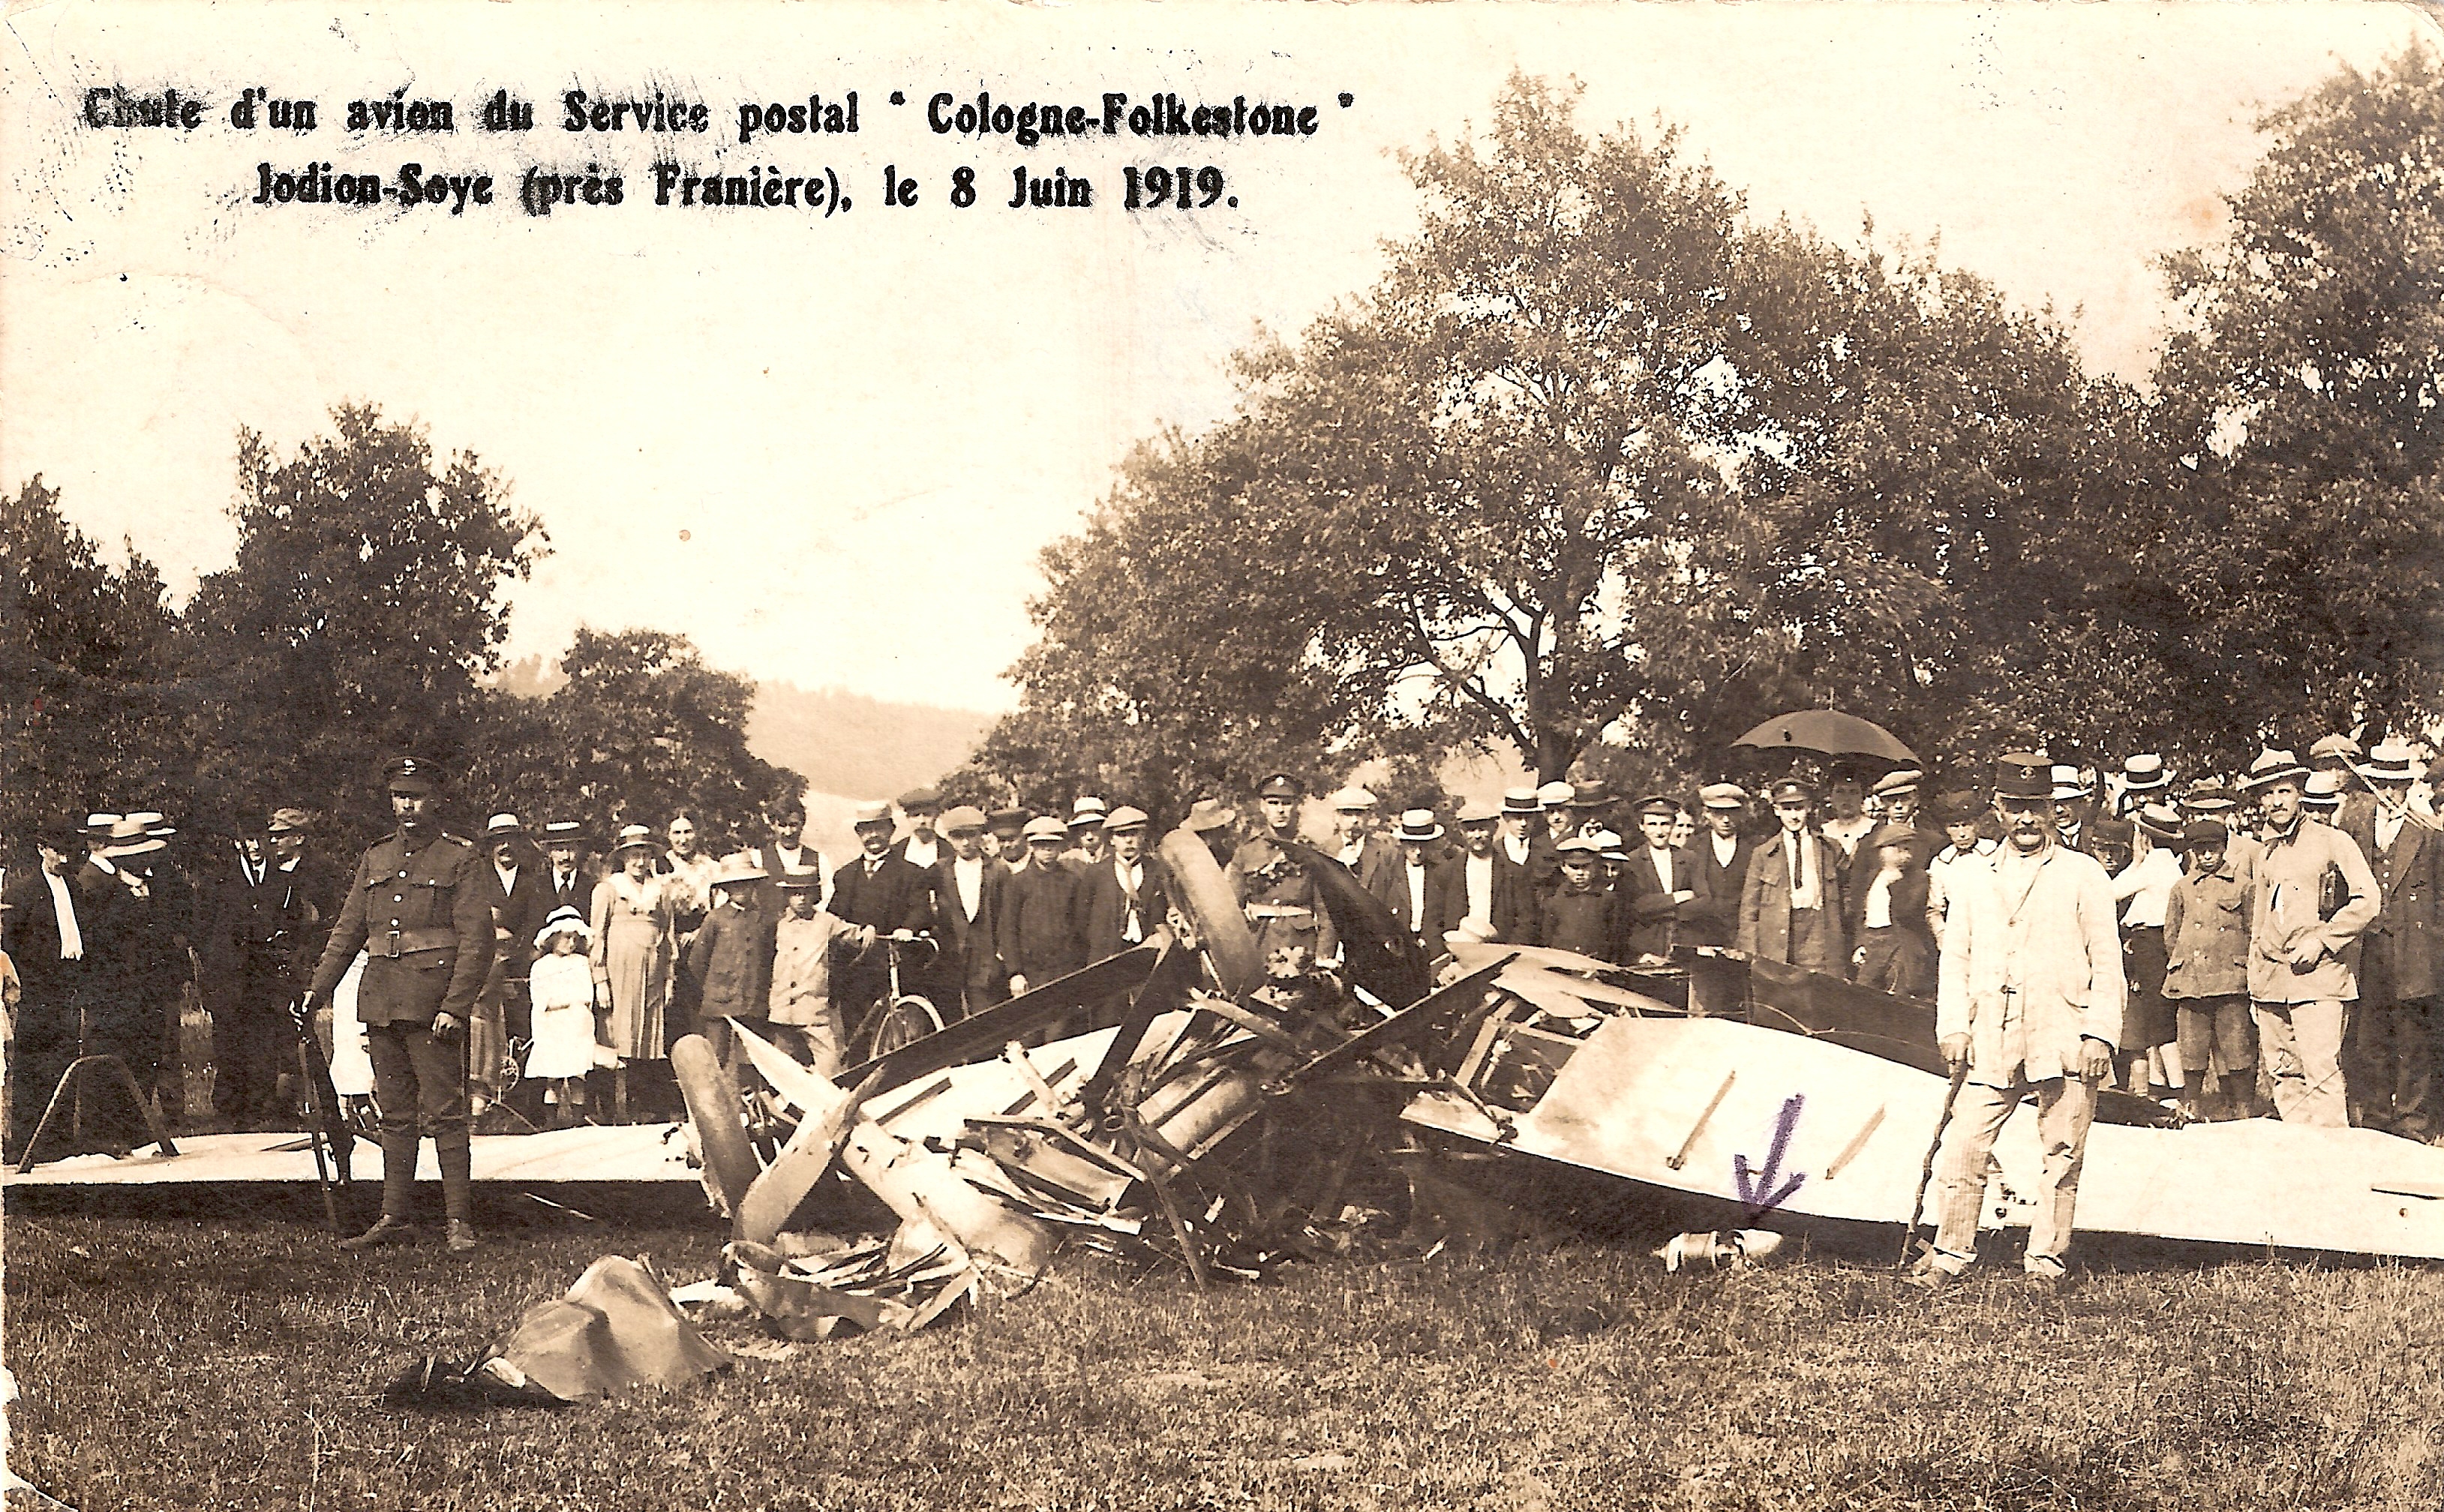 Belgique, Soye (Jodion) près de Franière (Floreffe) - Chute d'un avion du service postal « Cologne - Folkestone » le 8 juin 1919